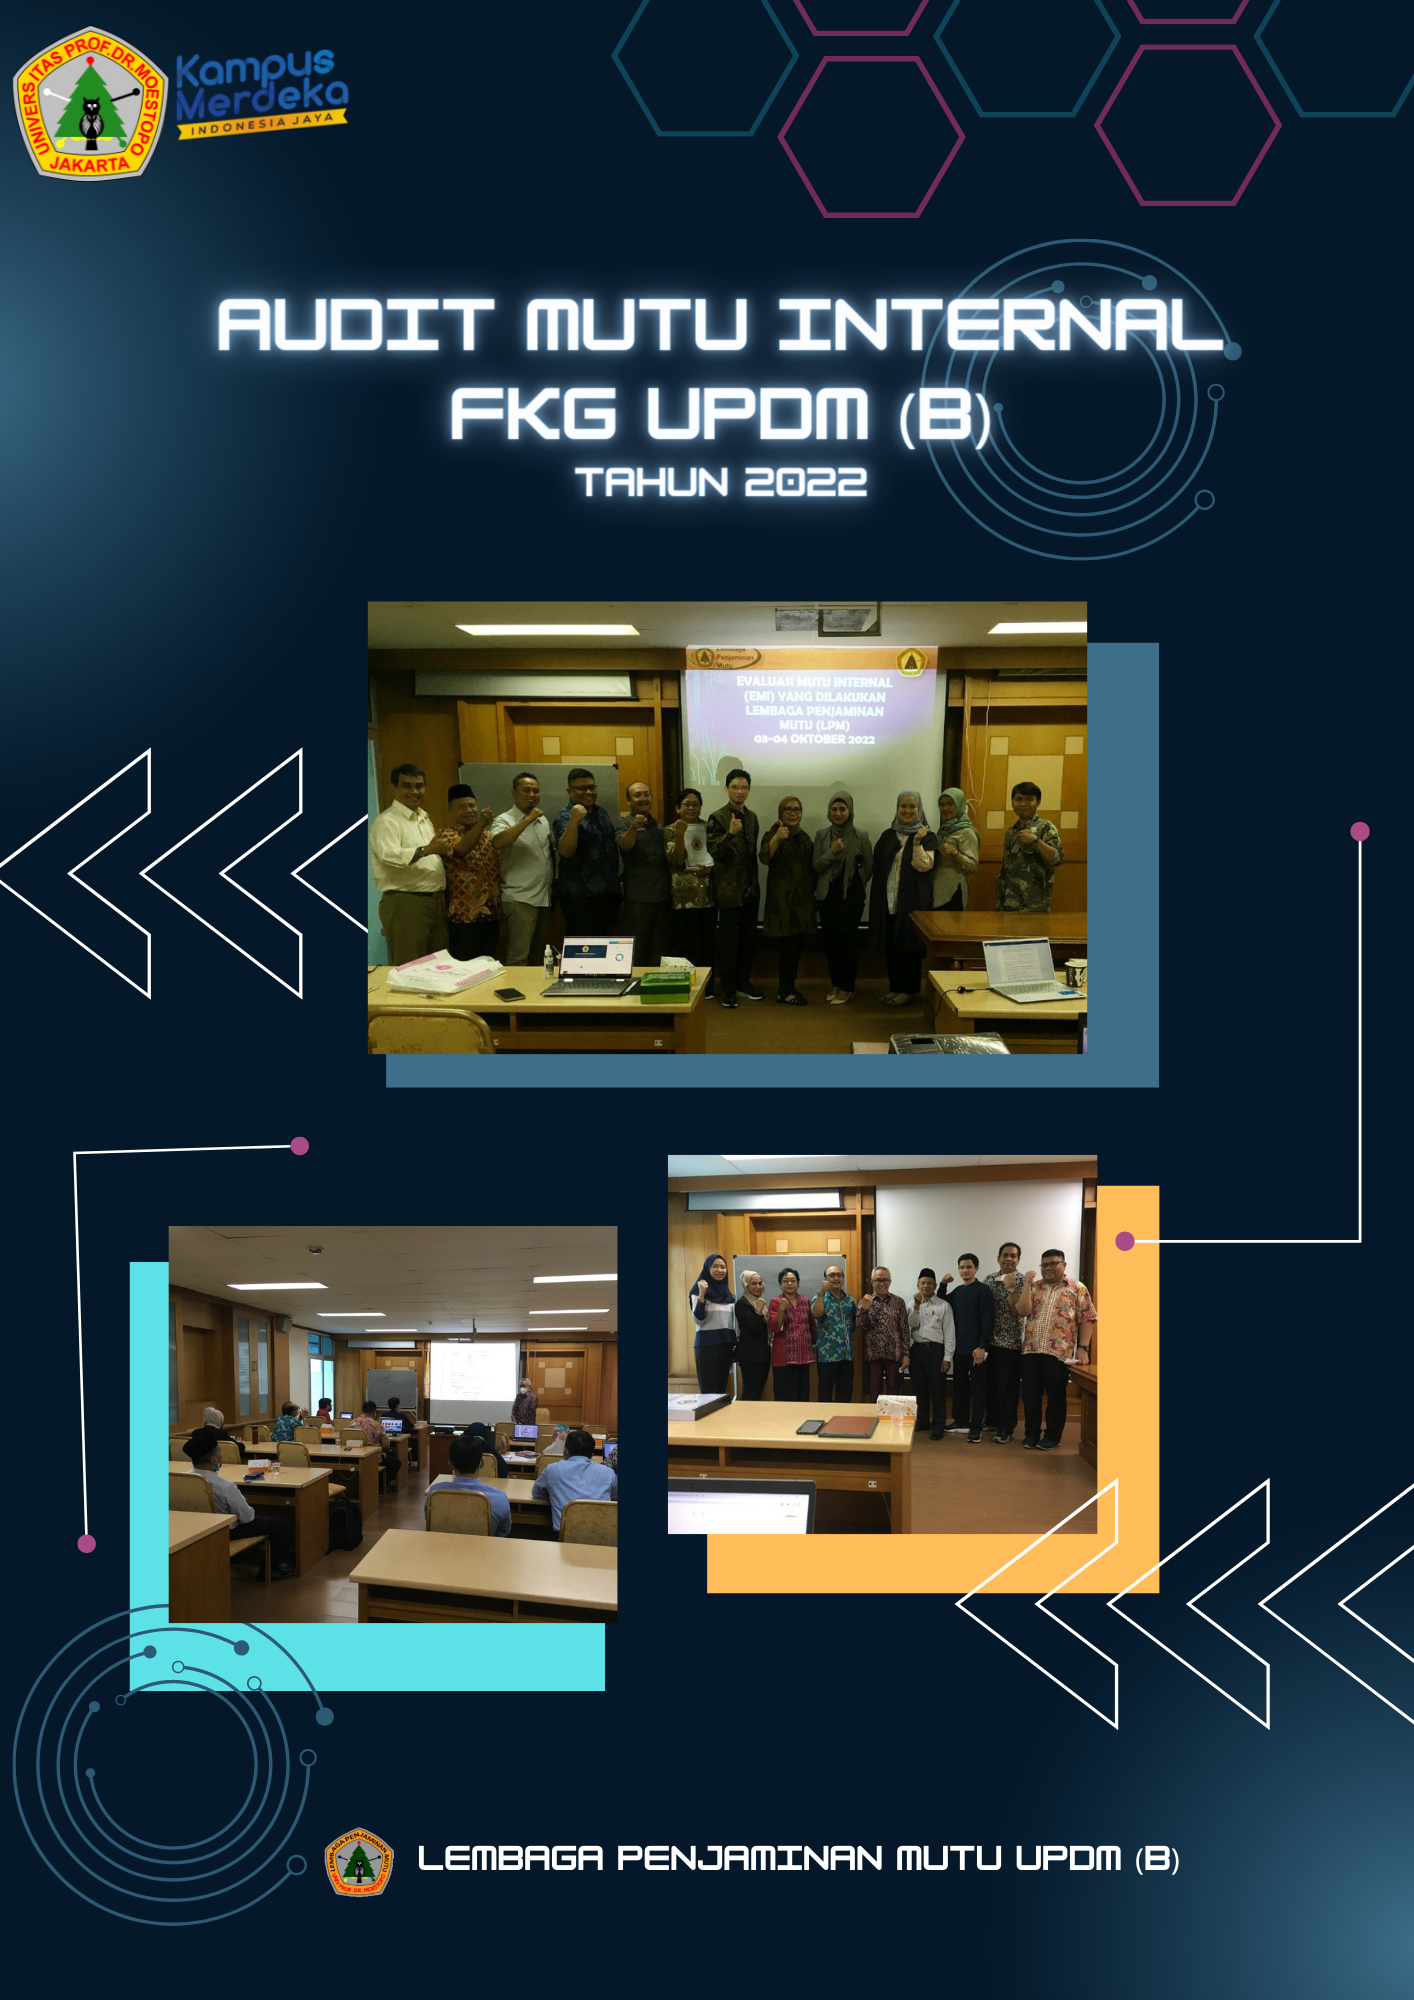 AUDIT MUTU INTERNAL FKG UPDM (B) TAHUN 2022